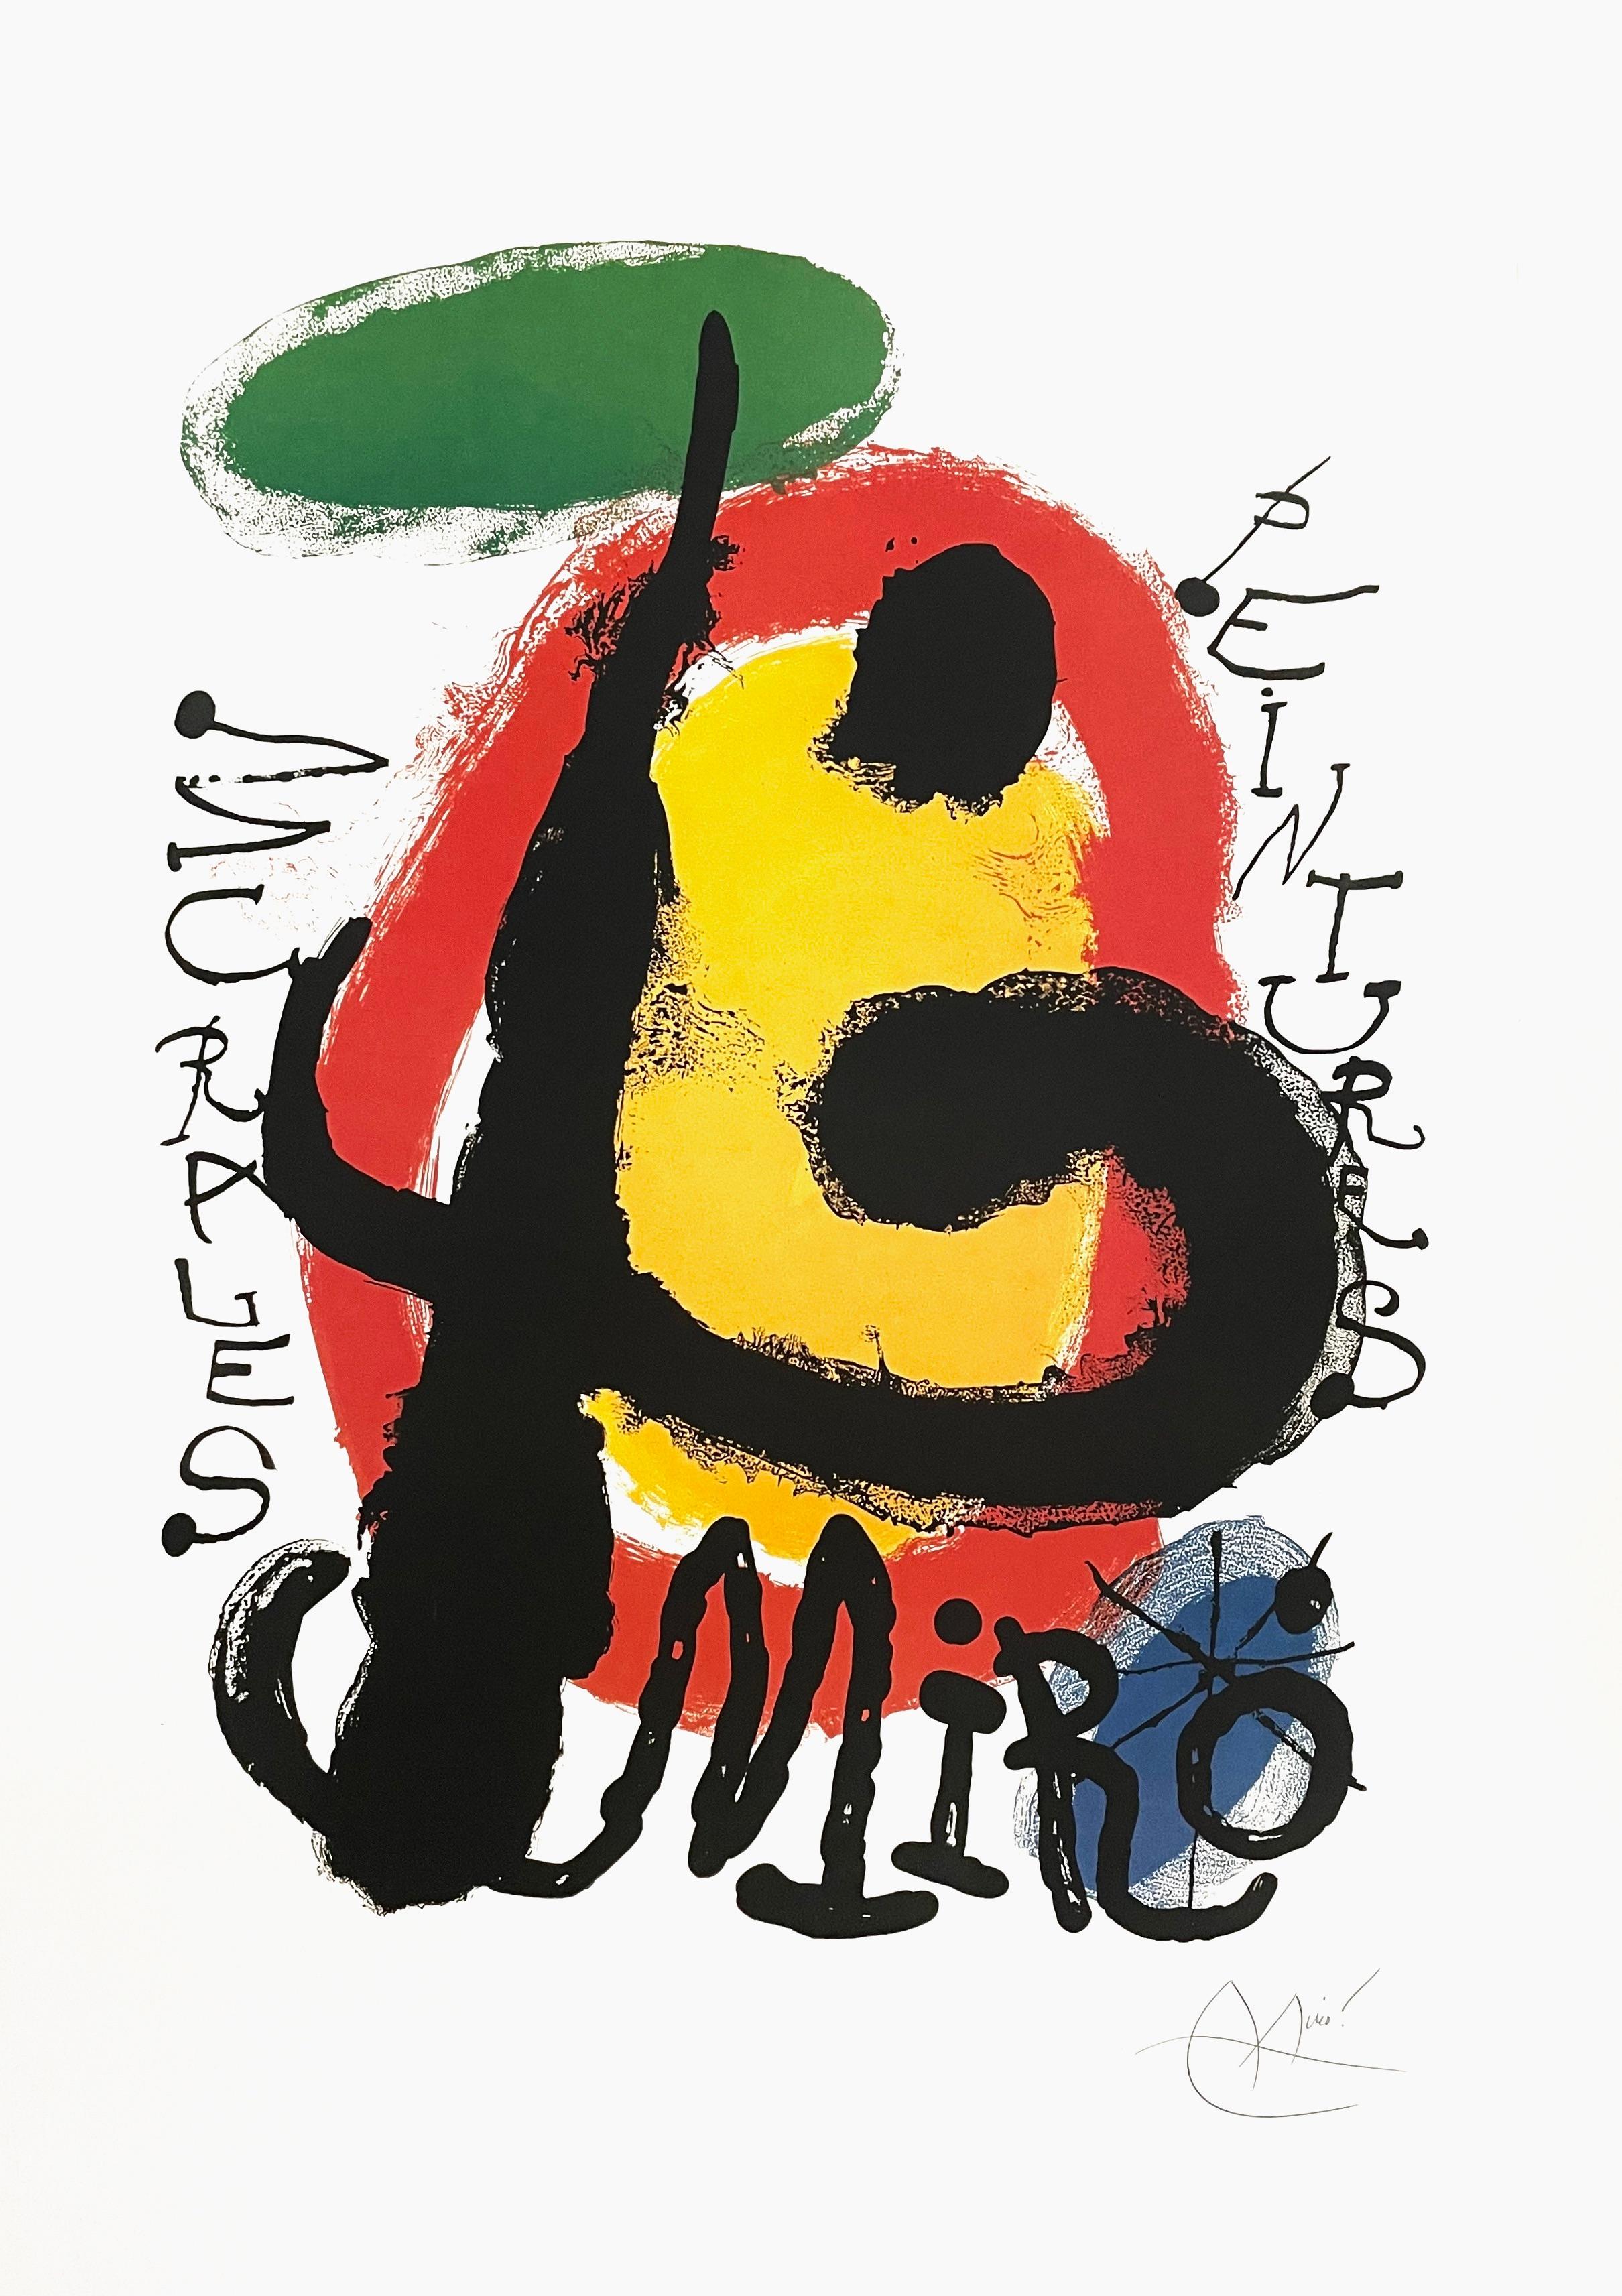 Abstract Print Joan Miró - Miro, Murales Peintures, 1961 Galerie Maeght